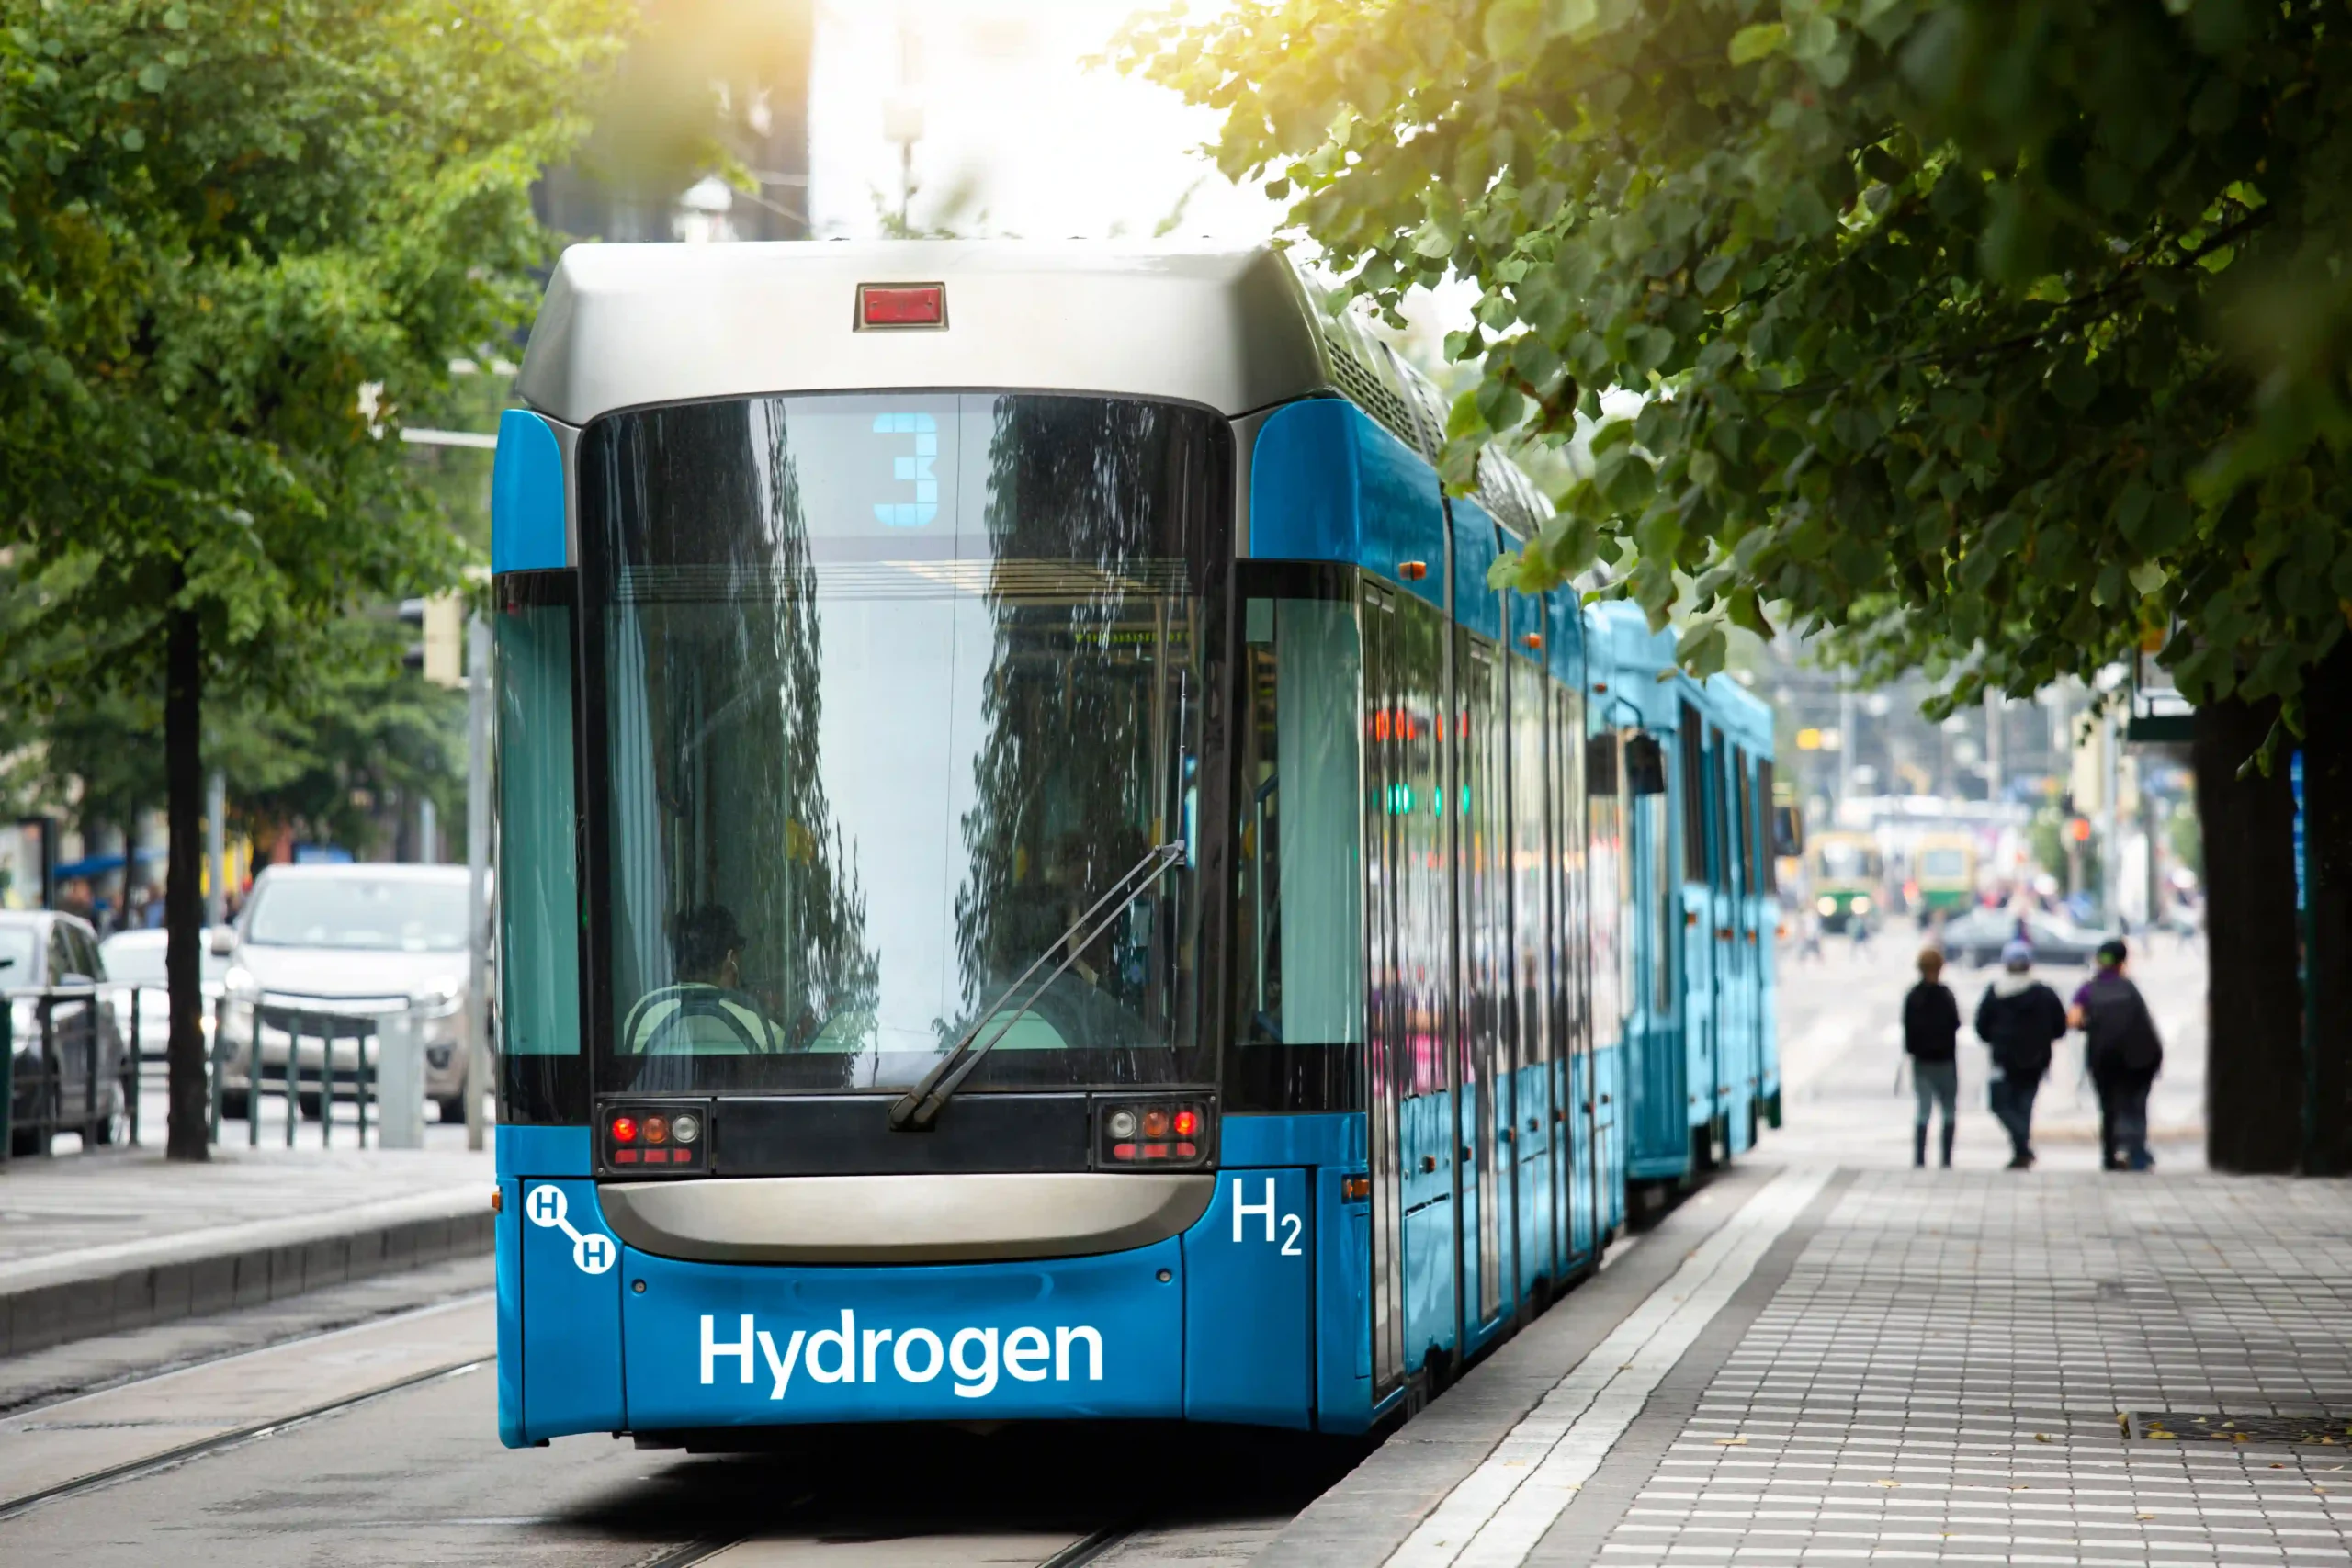 Tram On Hydrogen Energy